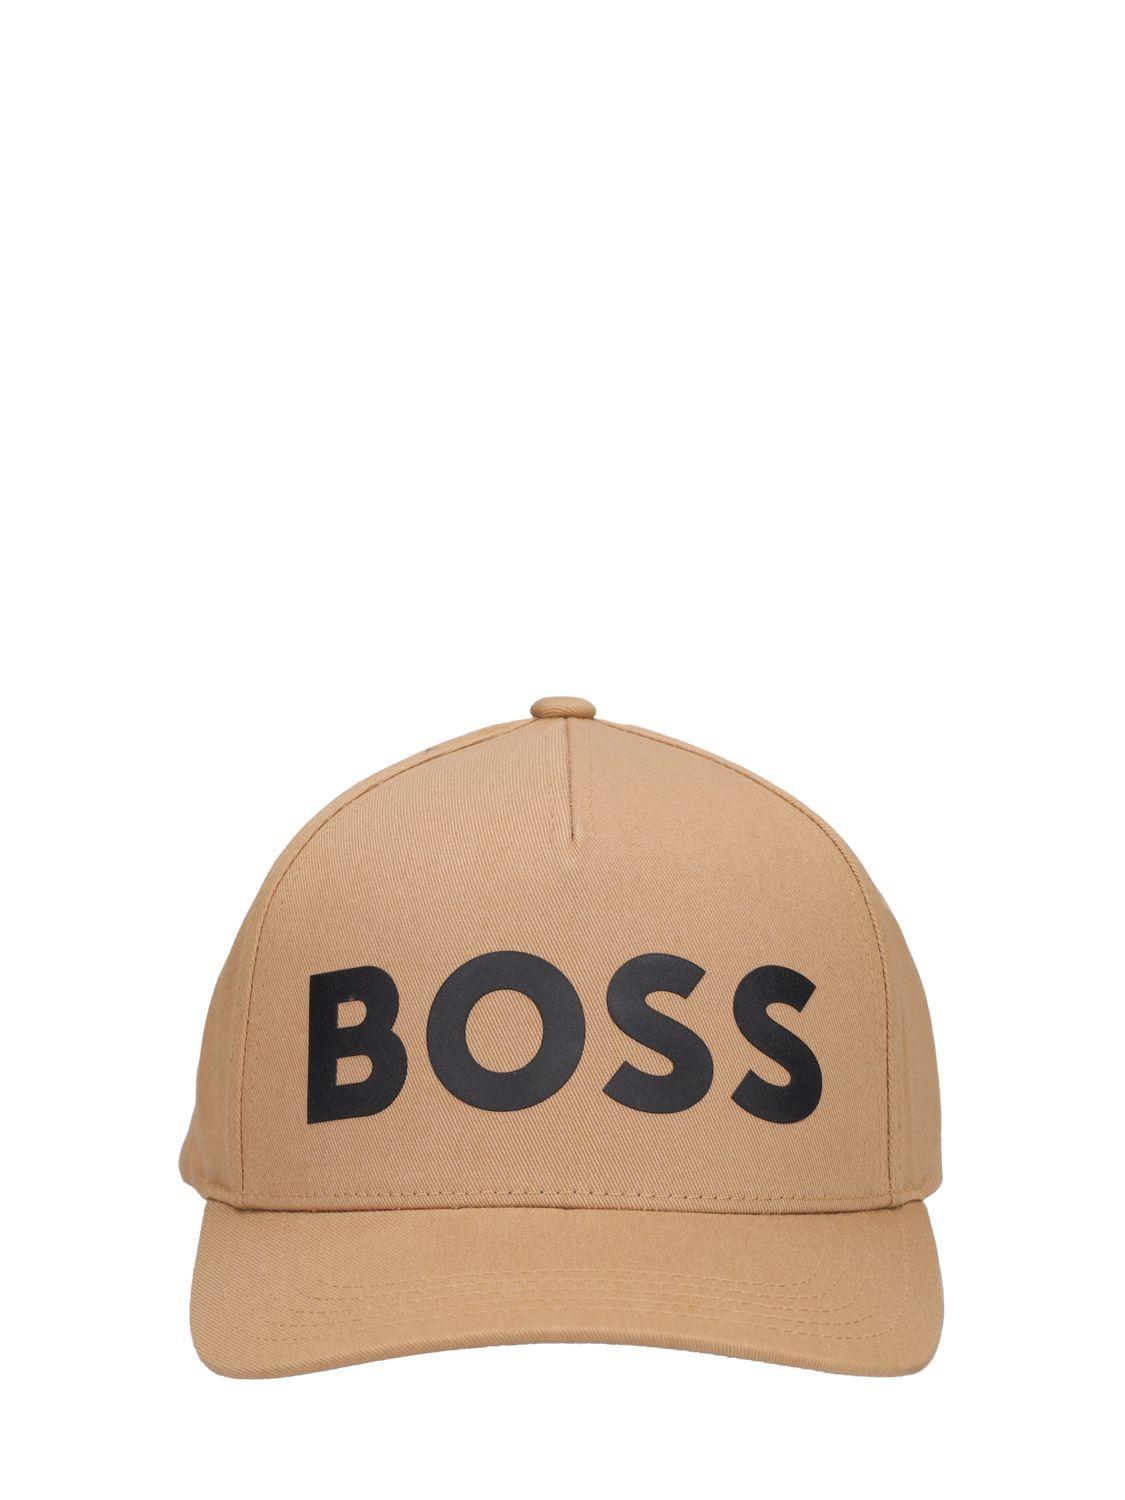 BOSS by HUGO BOSS Sevile Logo Cotton Cap in Natural for Men | Lyst